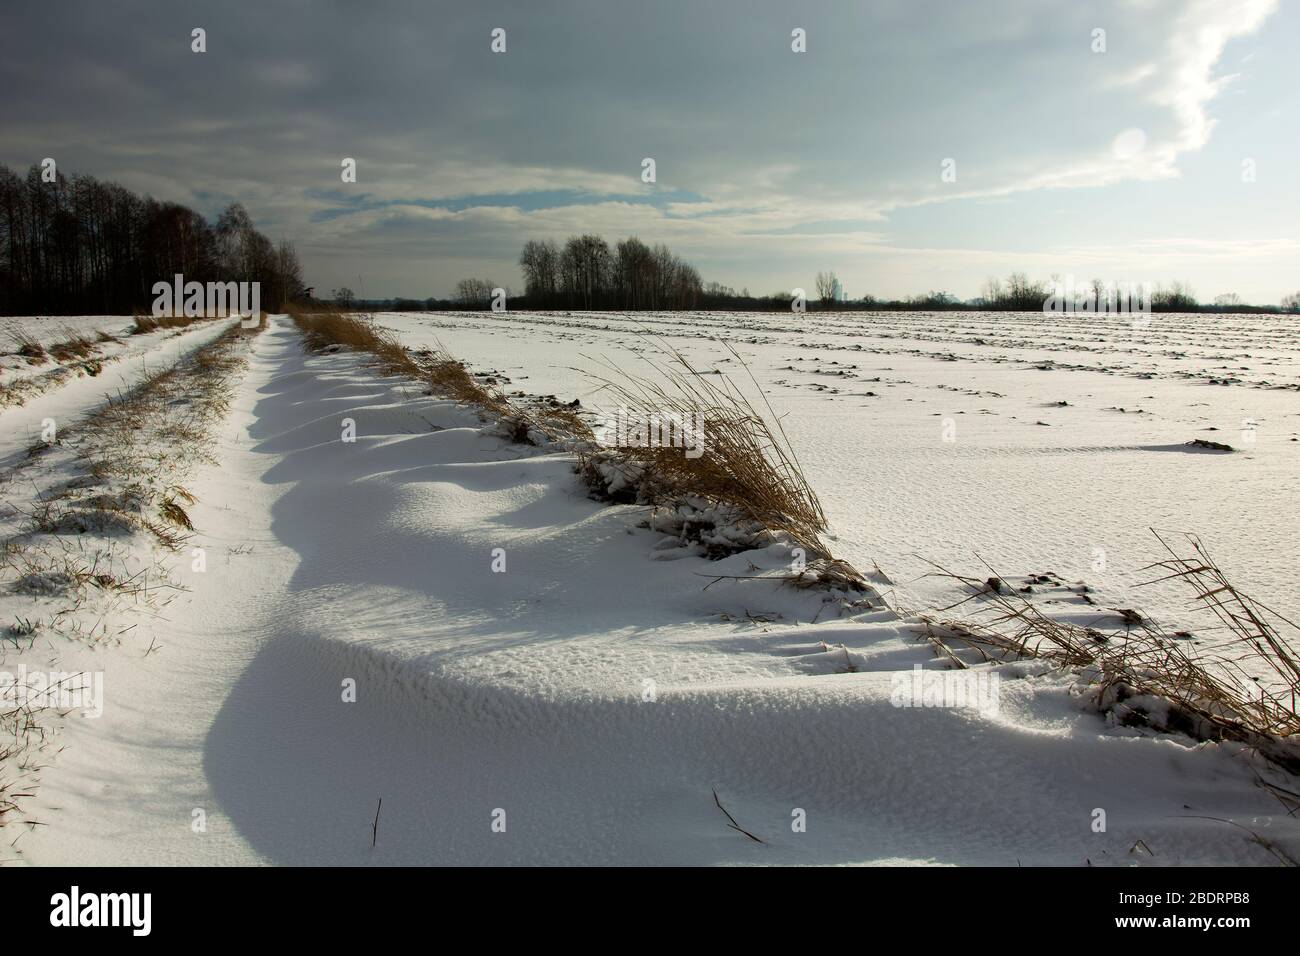 Les chutes de neige sur une route et un champ de terre, ciel nuageux, vue d'hiver Banque D'Images